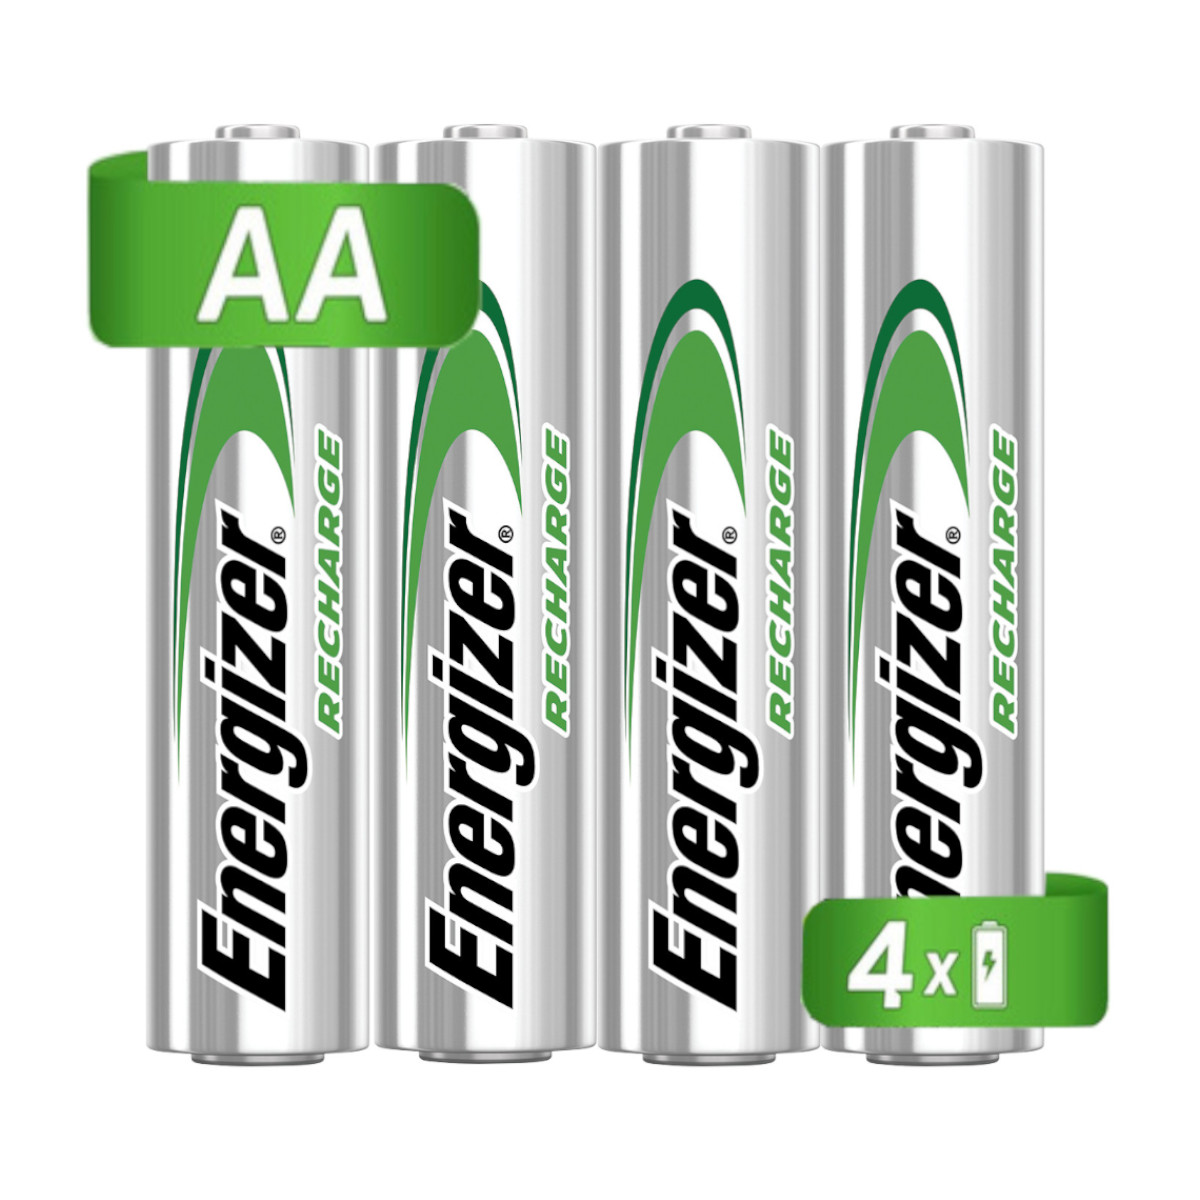 Cargador Pilas Baterías Energizer + 4 Pilas AA + 4 Pilas AAA